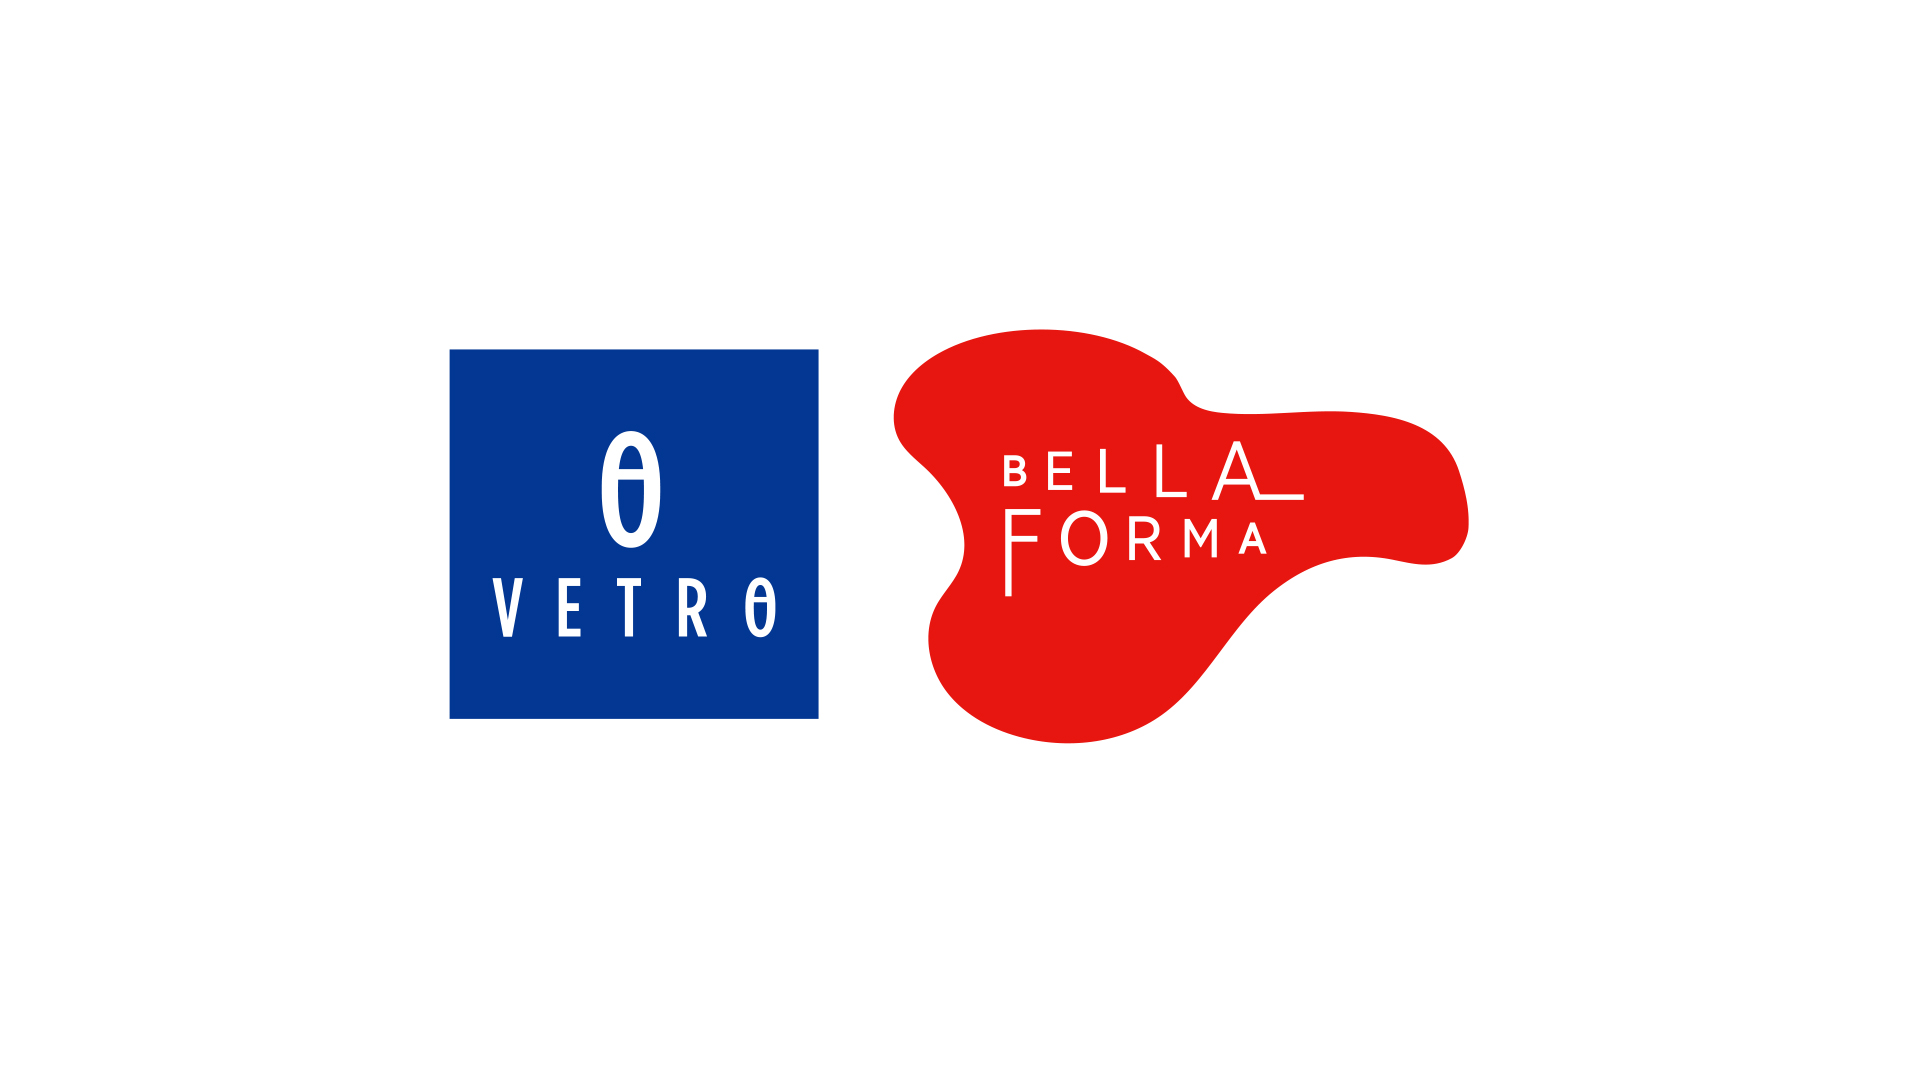 VETRO/BellaForma